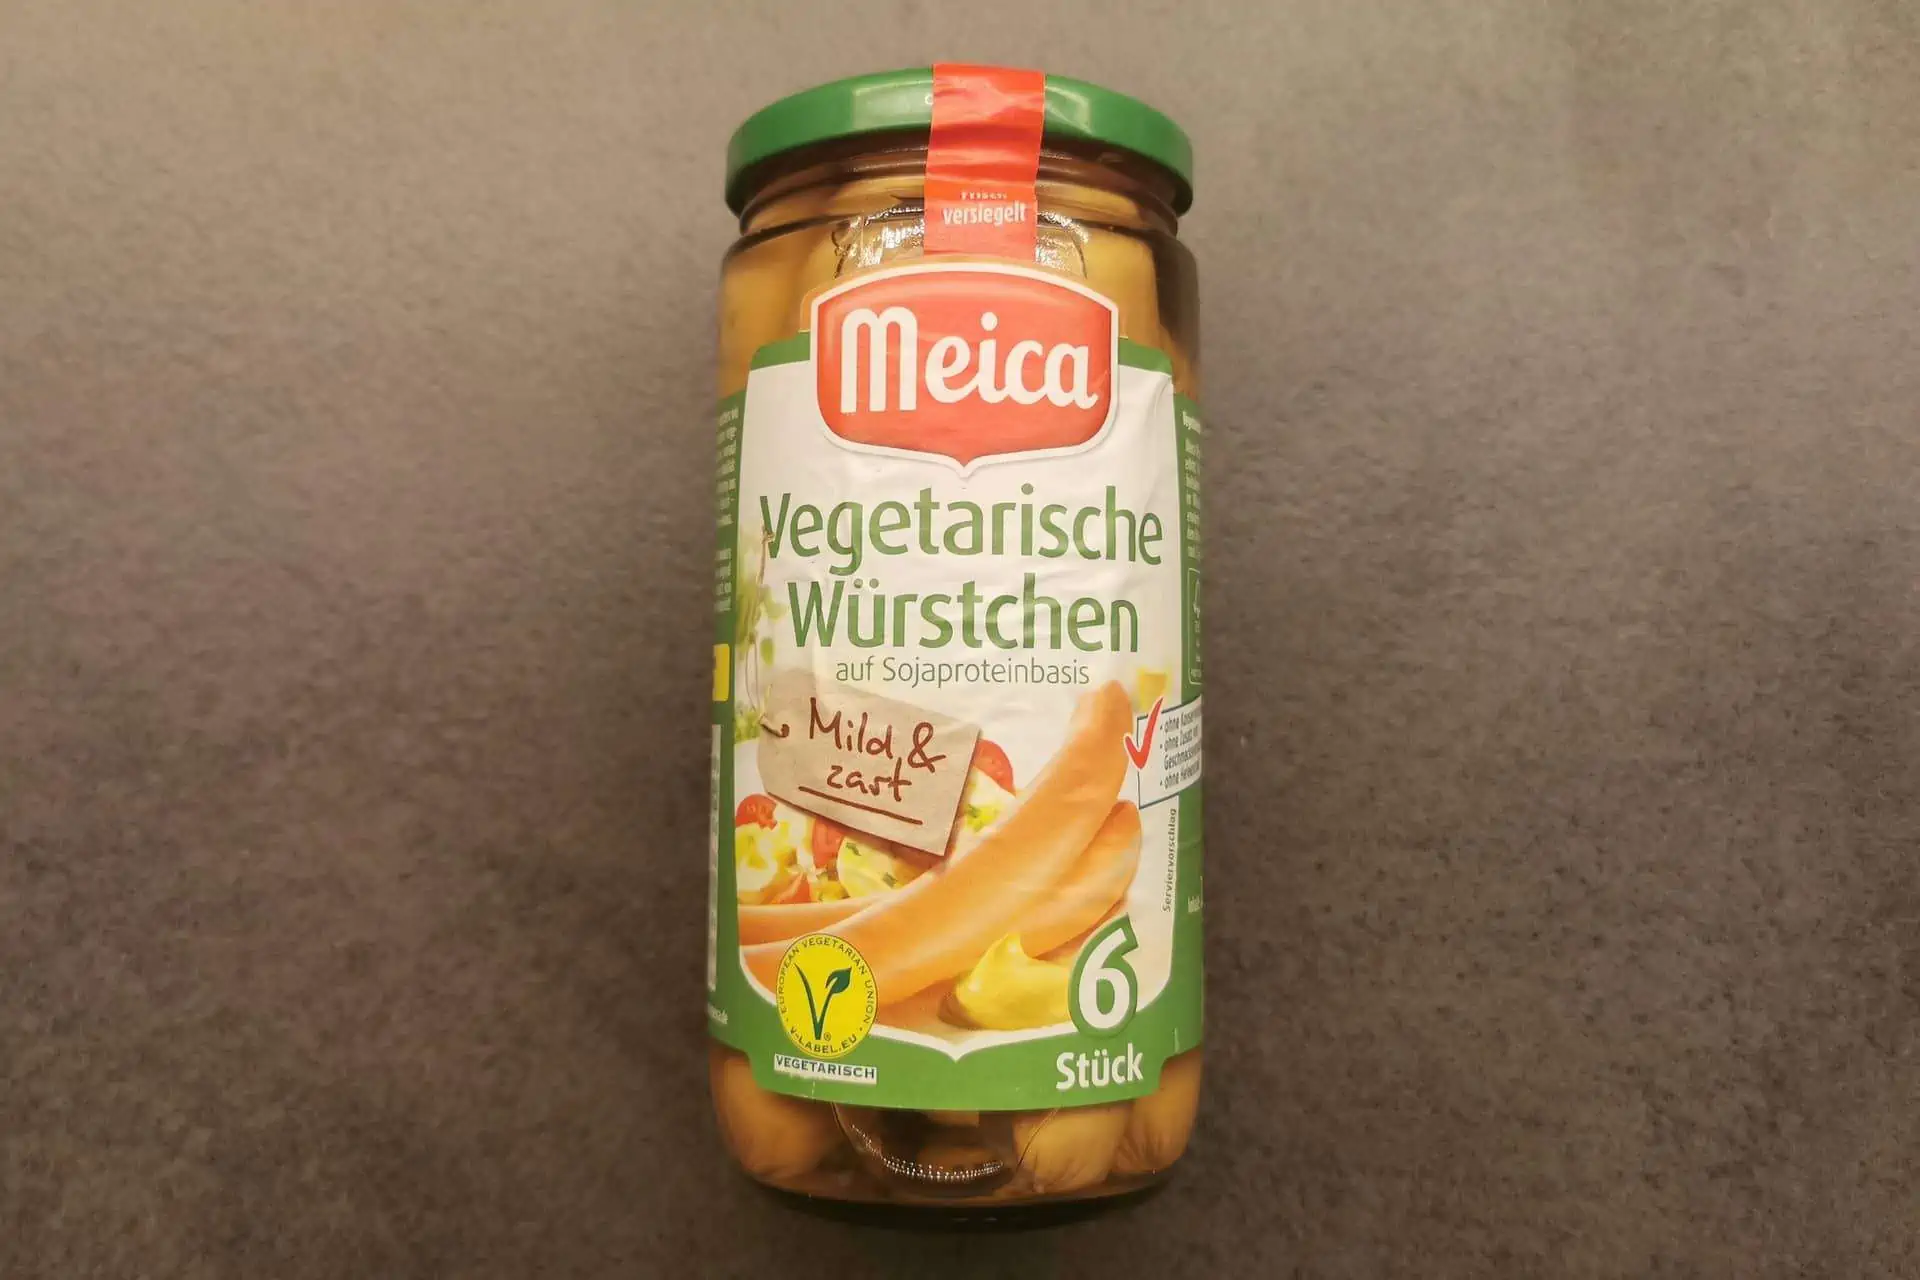 Meica - Vegetarische Würstchen